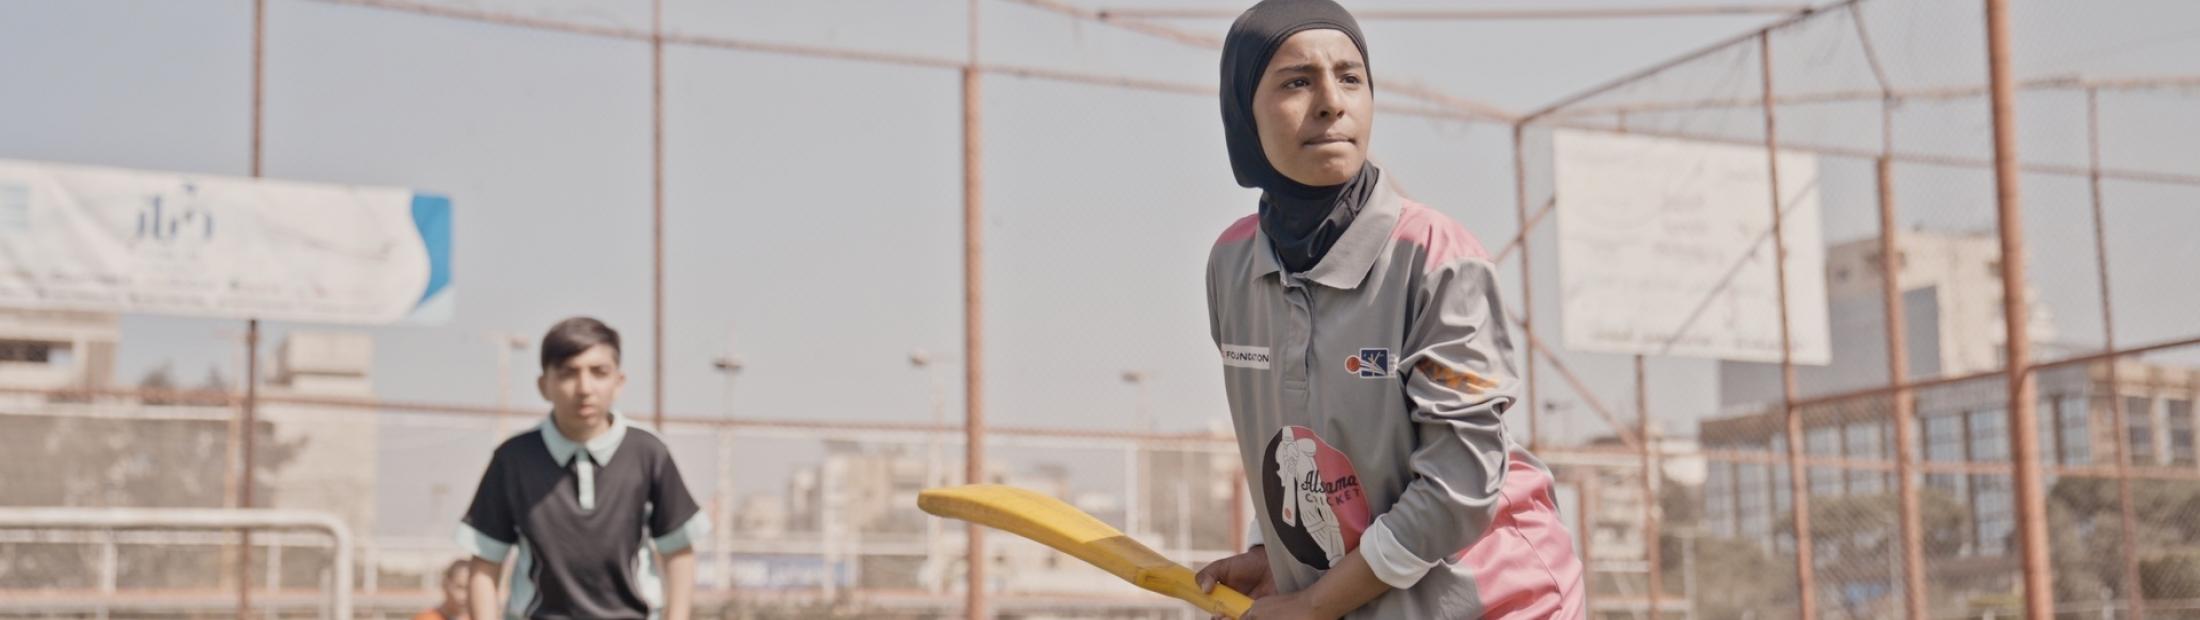 Documental "Líbano, retrato del empoderamiento", en "Latituds"